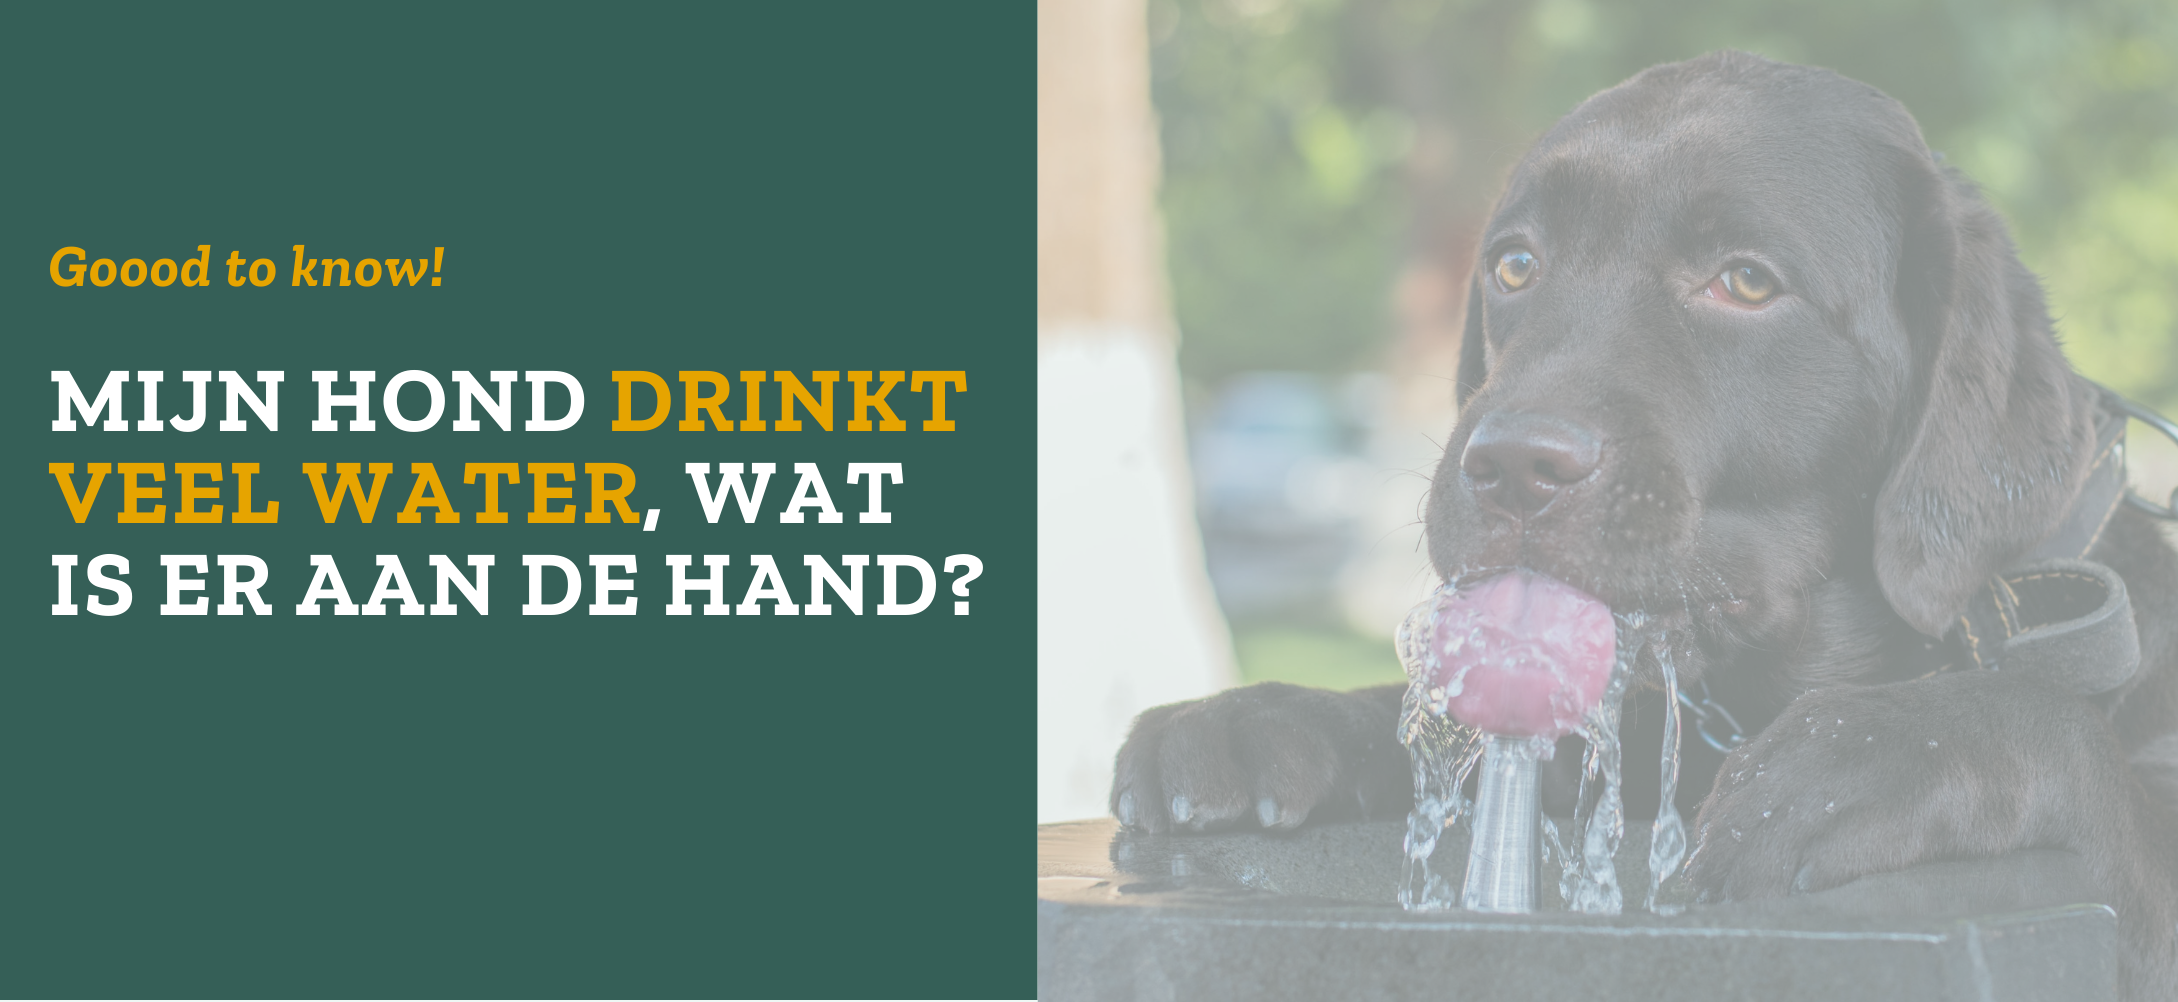 Mijn hond drinkt veel water